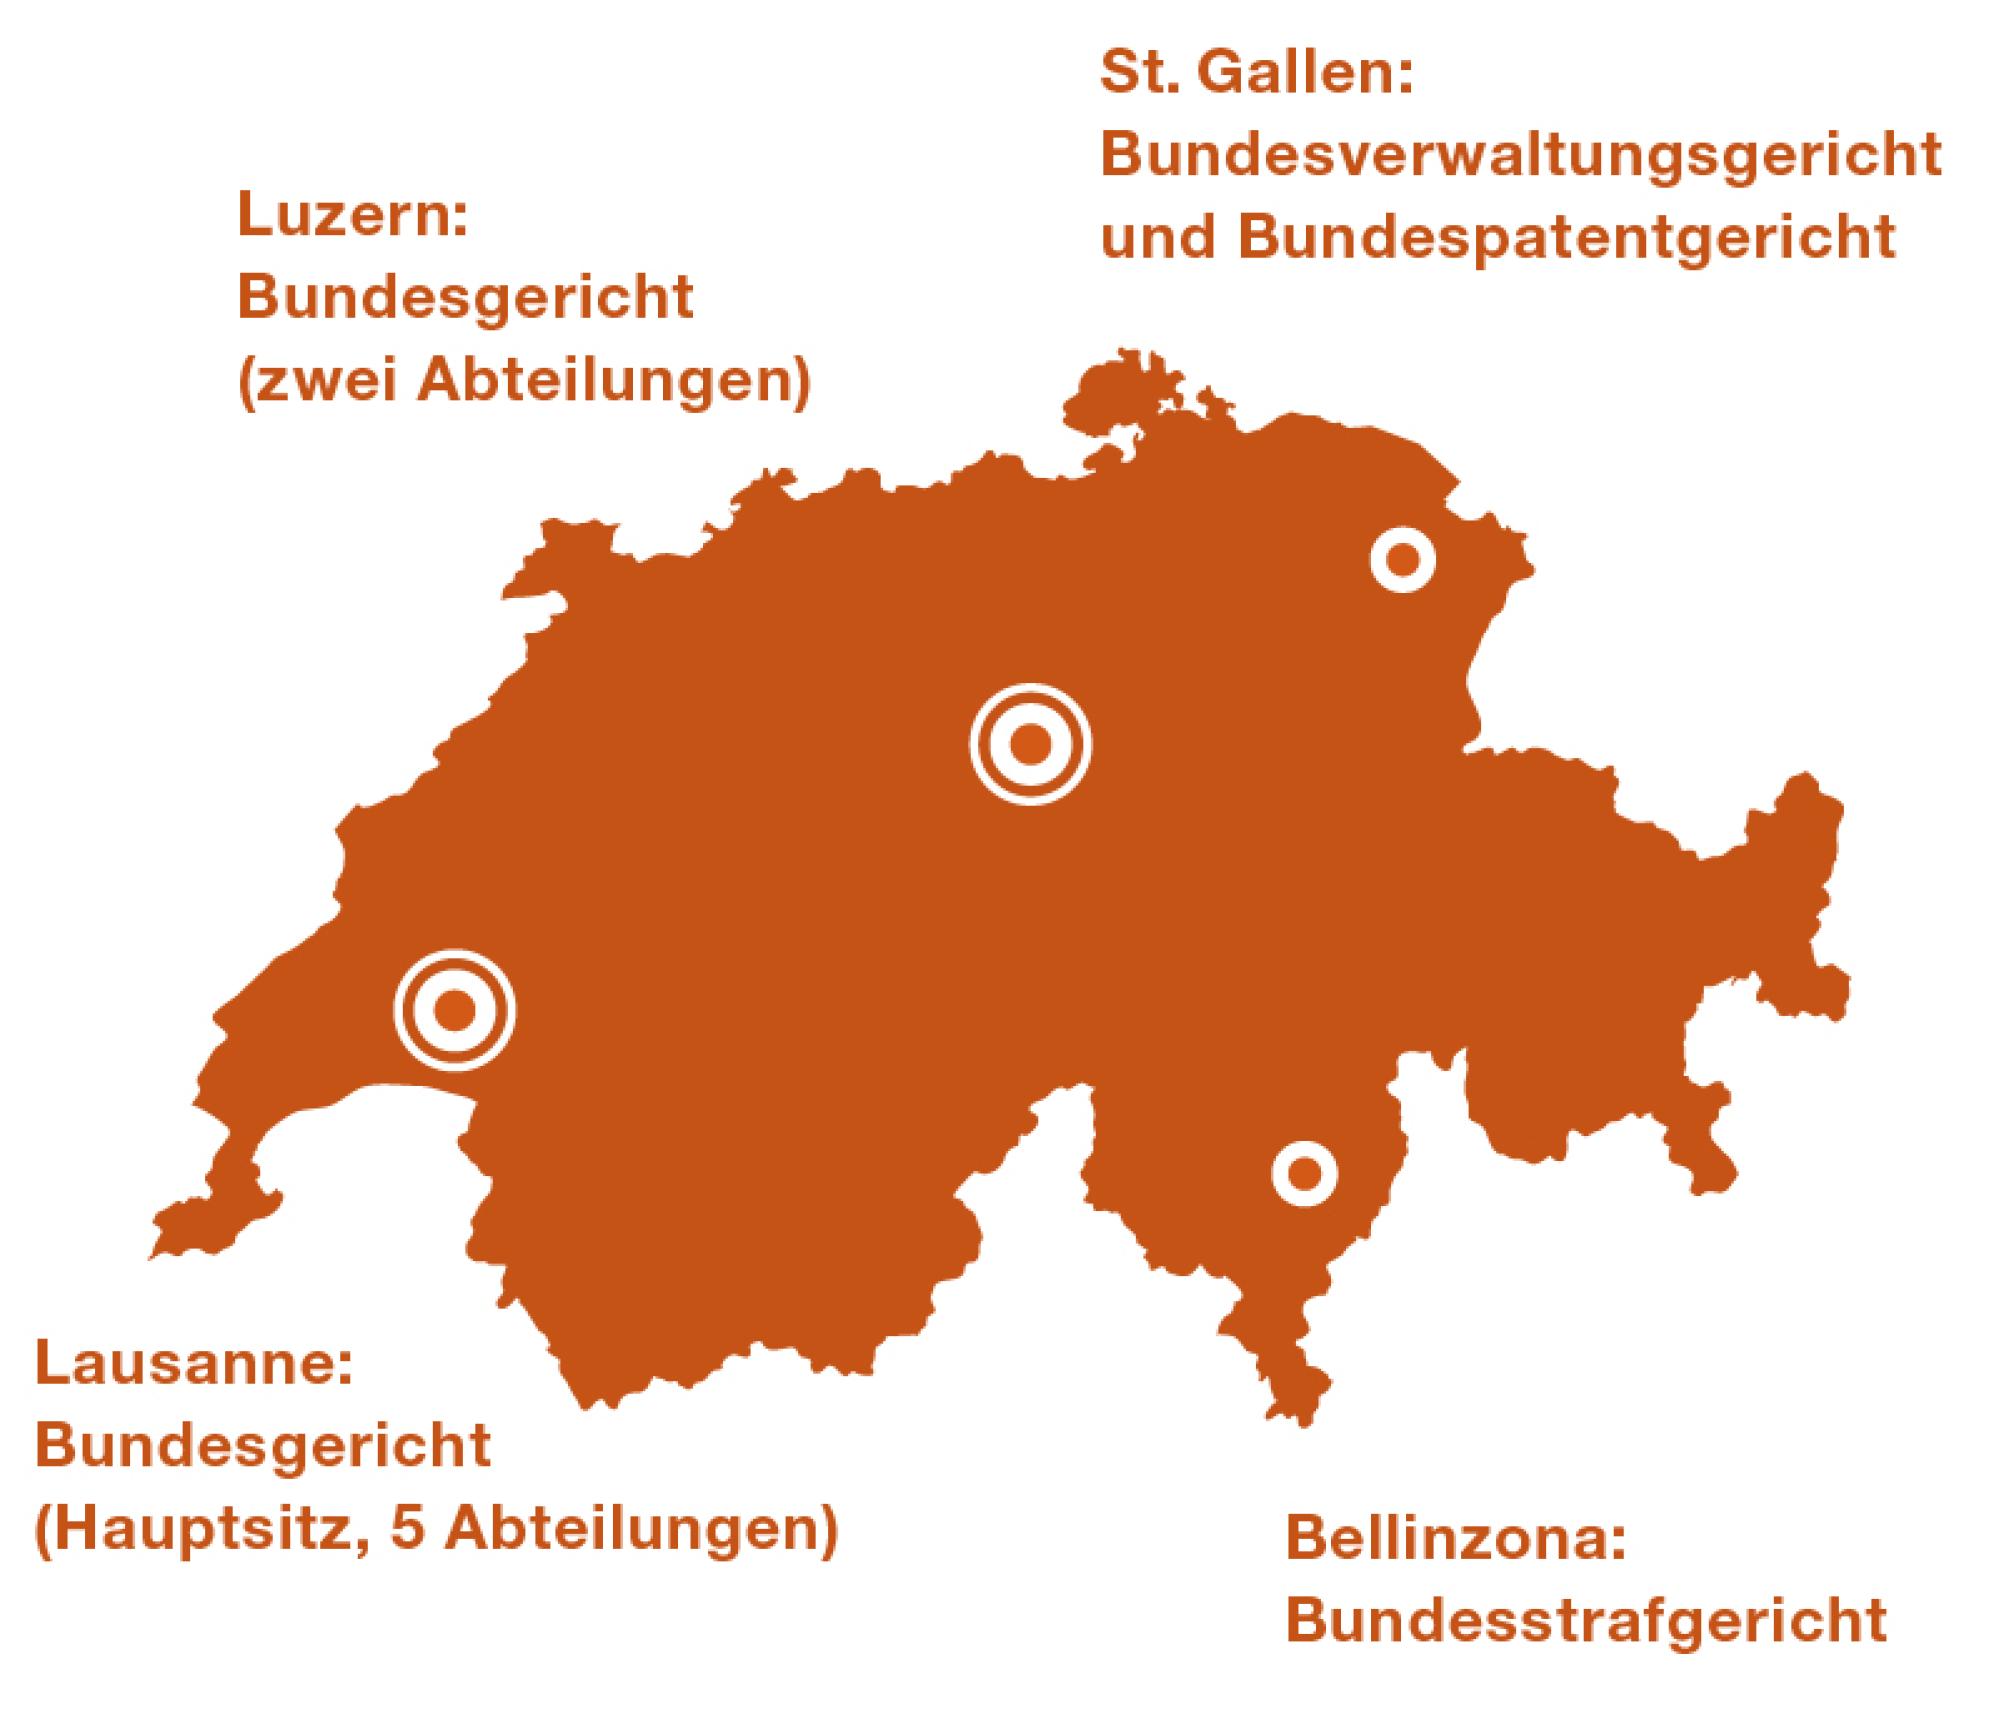 Lausanne Hauptsitz Bundesgericht (5 Abteilungen). Luzern Bundesgericht (2 Abteilungen). St. Gallen Bundesverwaltungsgericht und Bundespatentgericht. Bellinzona Bundesstrafgericht.